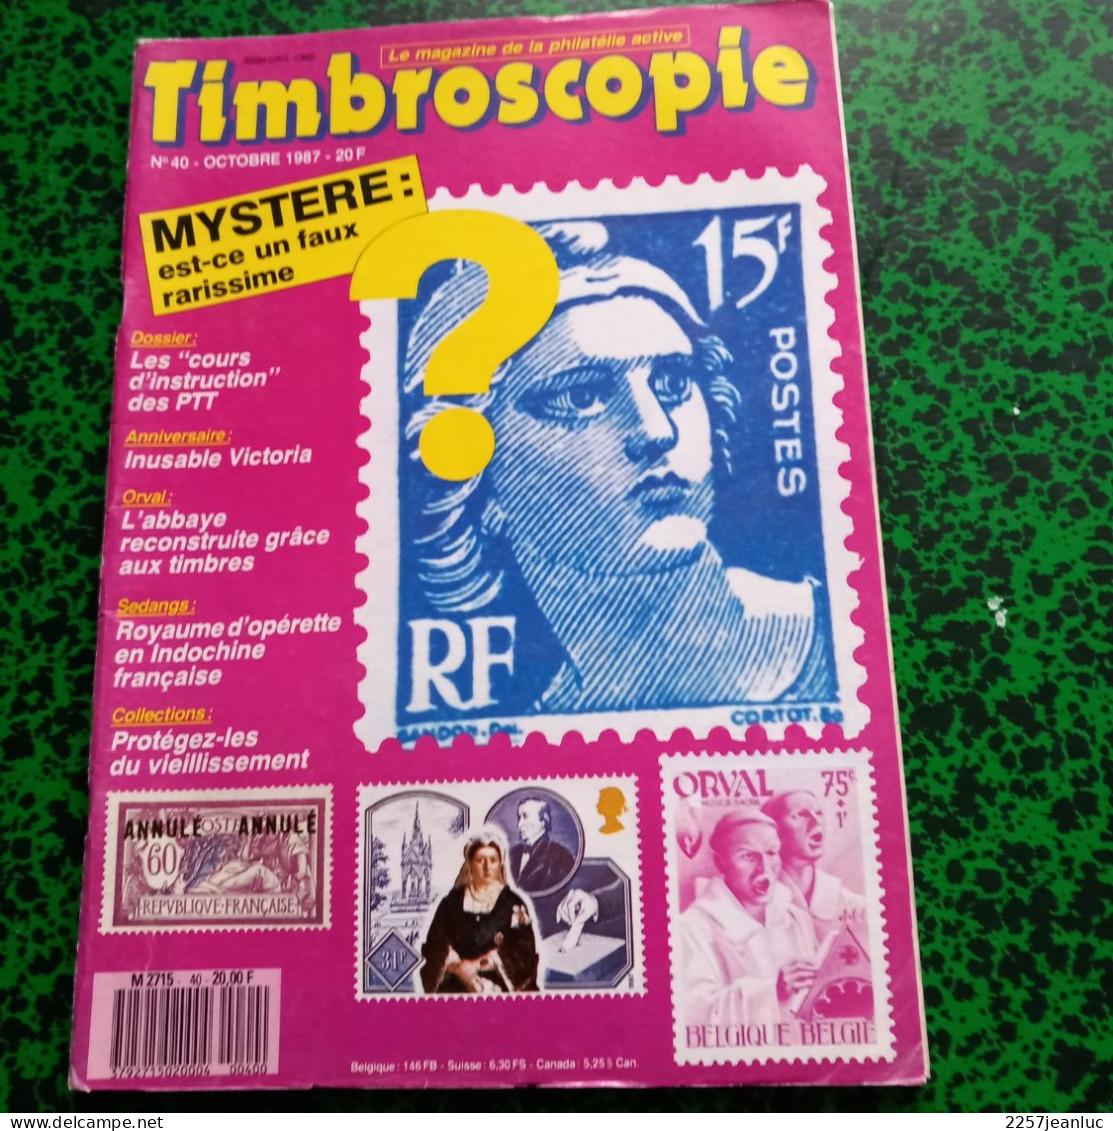 Magazines De La Philatélie * Timbroscopie N:40 De Octobre 1987 * Faux Passé Inaperçu... - French (from 1941)